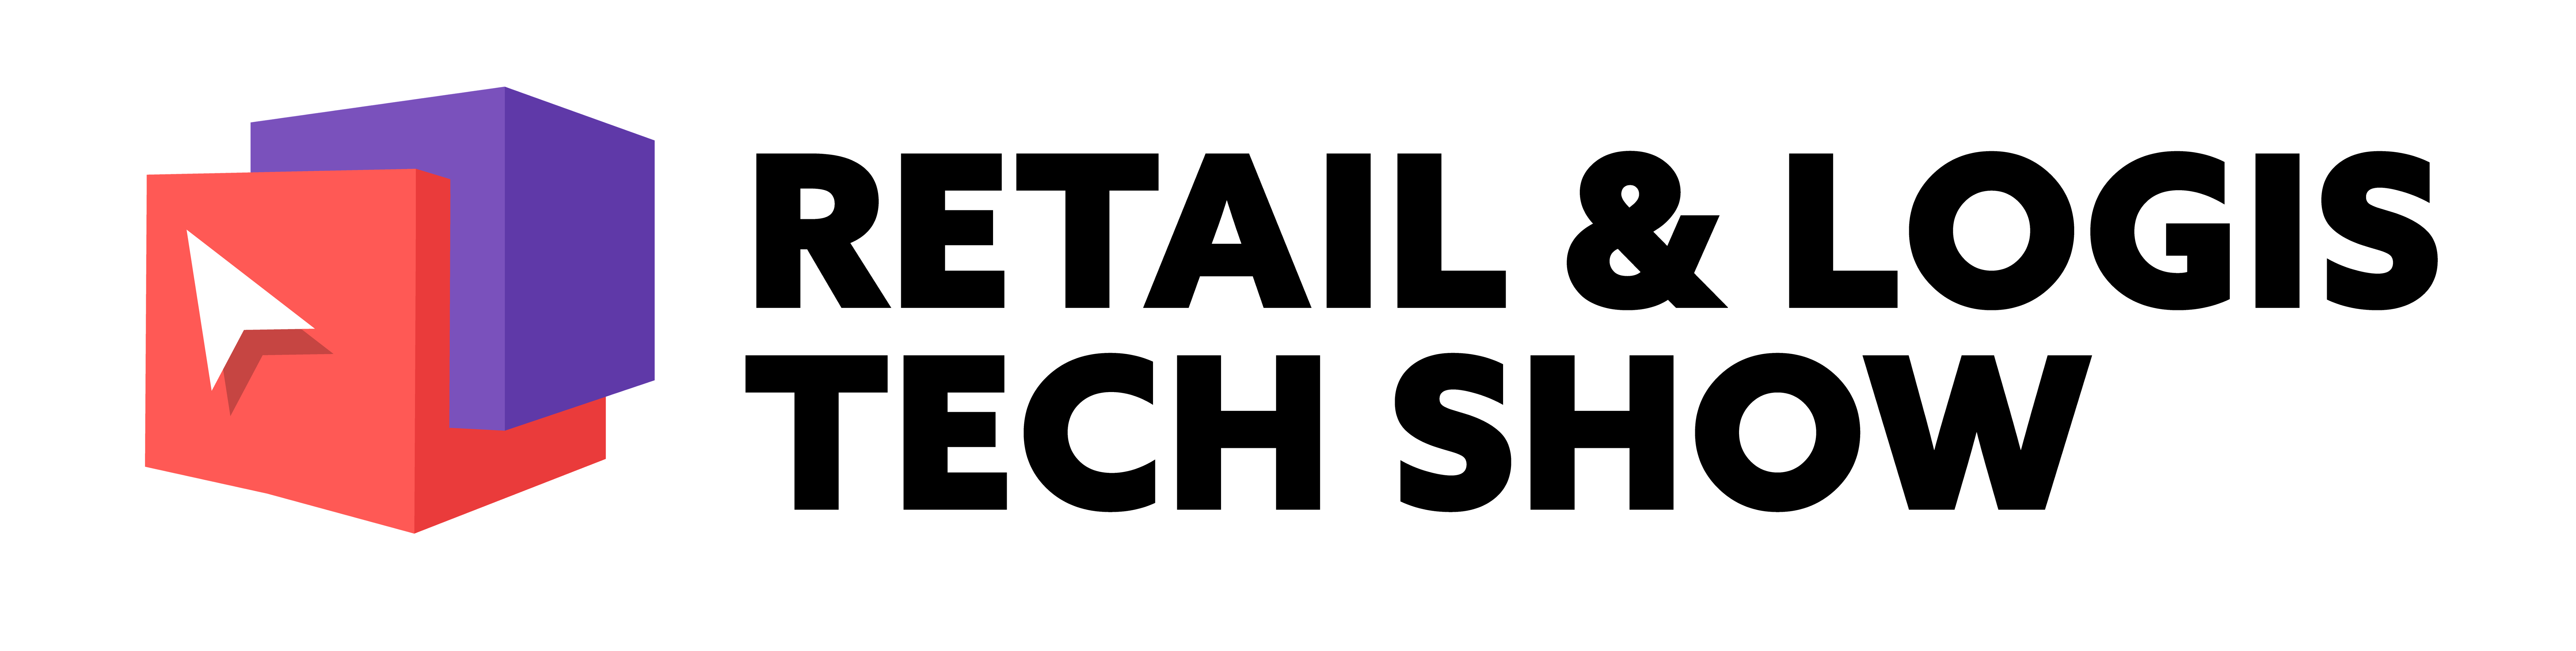 Retail & Logis Tech Korea